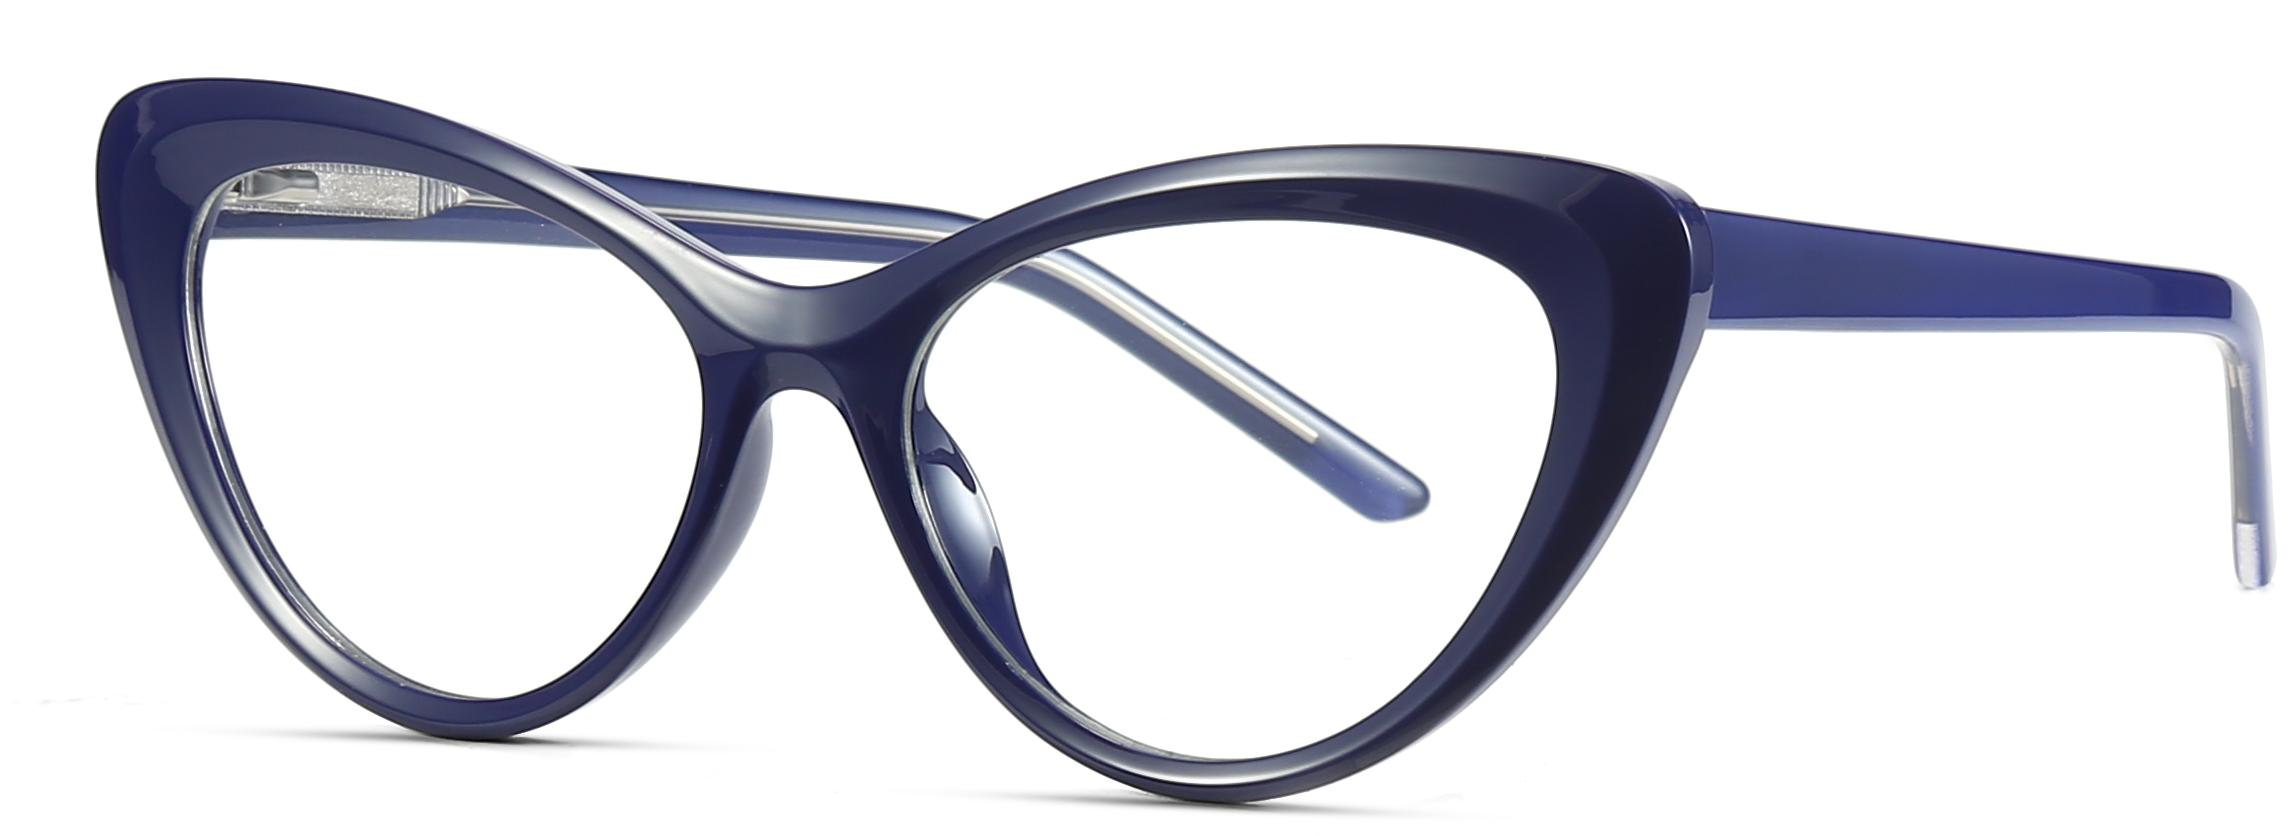 既製品ファッションキャットアイシェイプ TR90+CP 抗青色光レンズ女性光学フレーム #2020